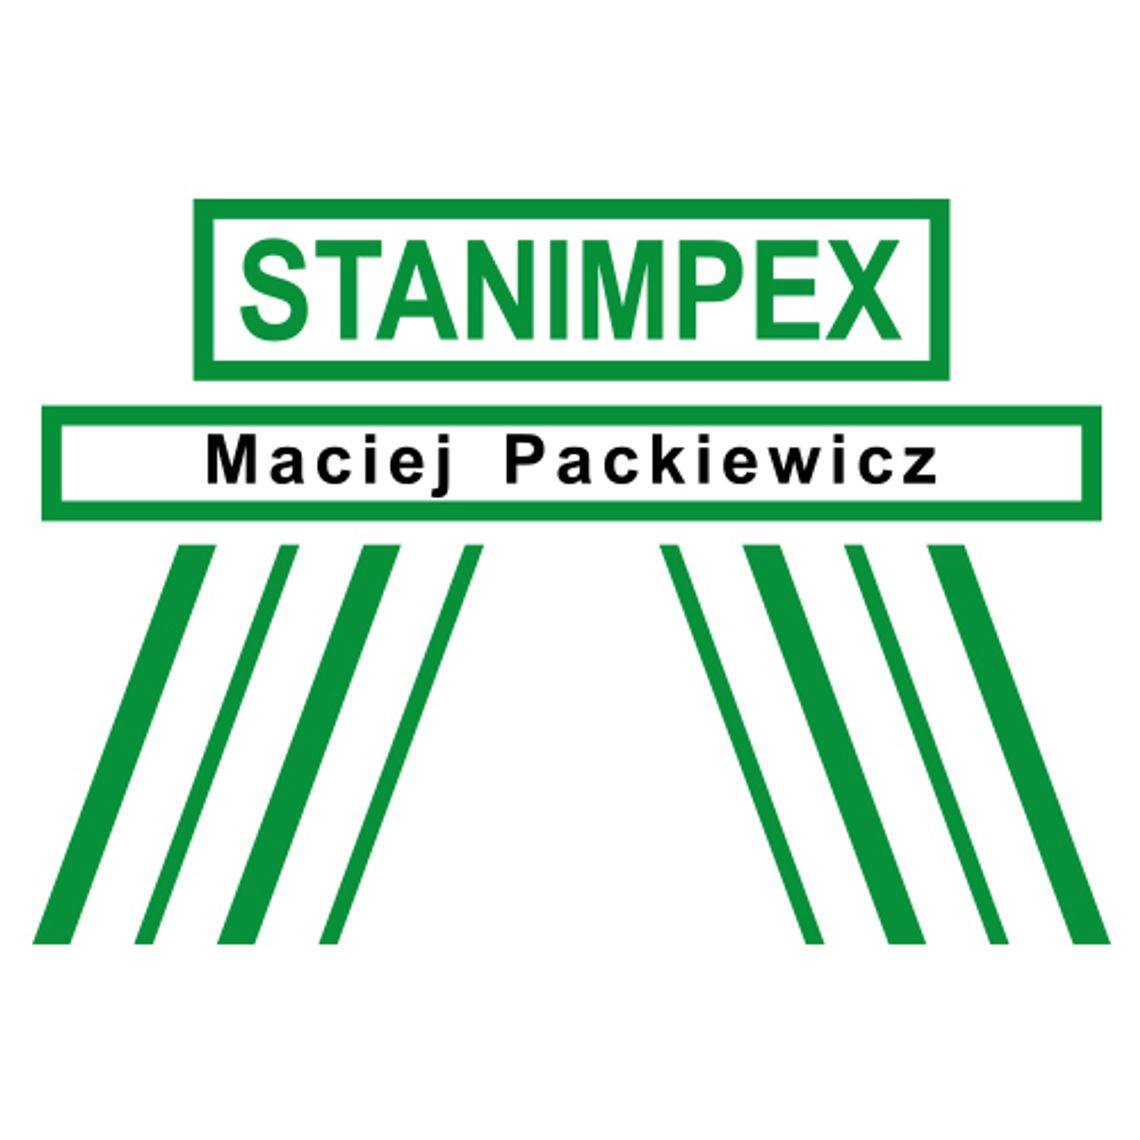 Stanimpex